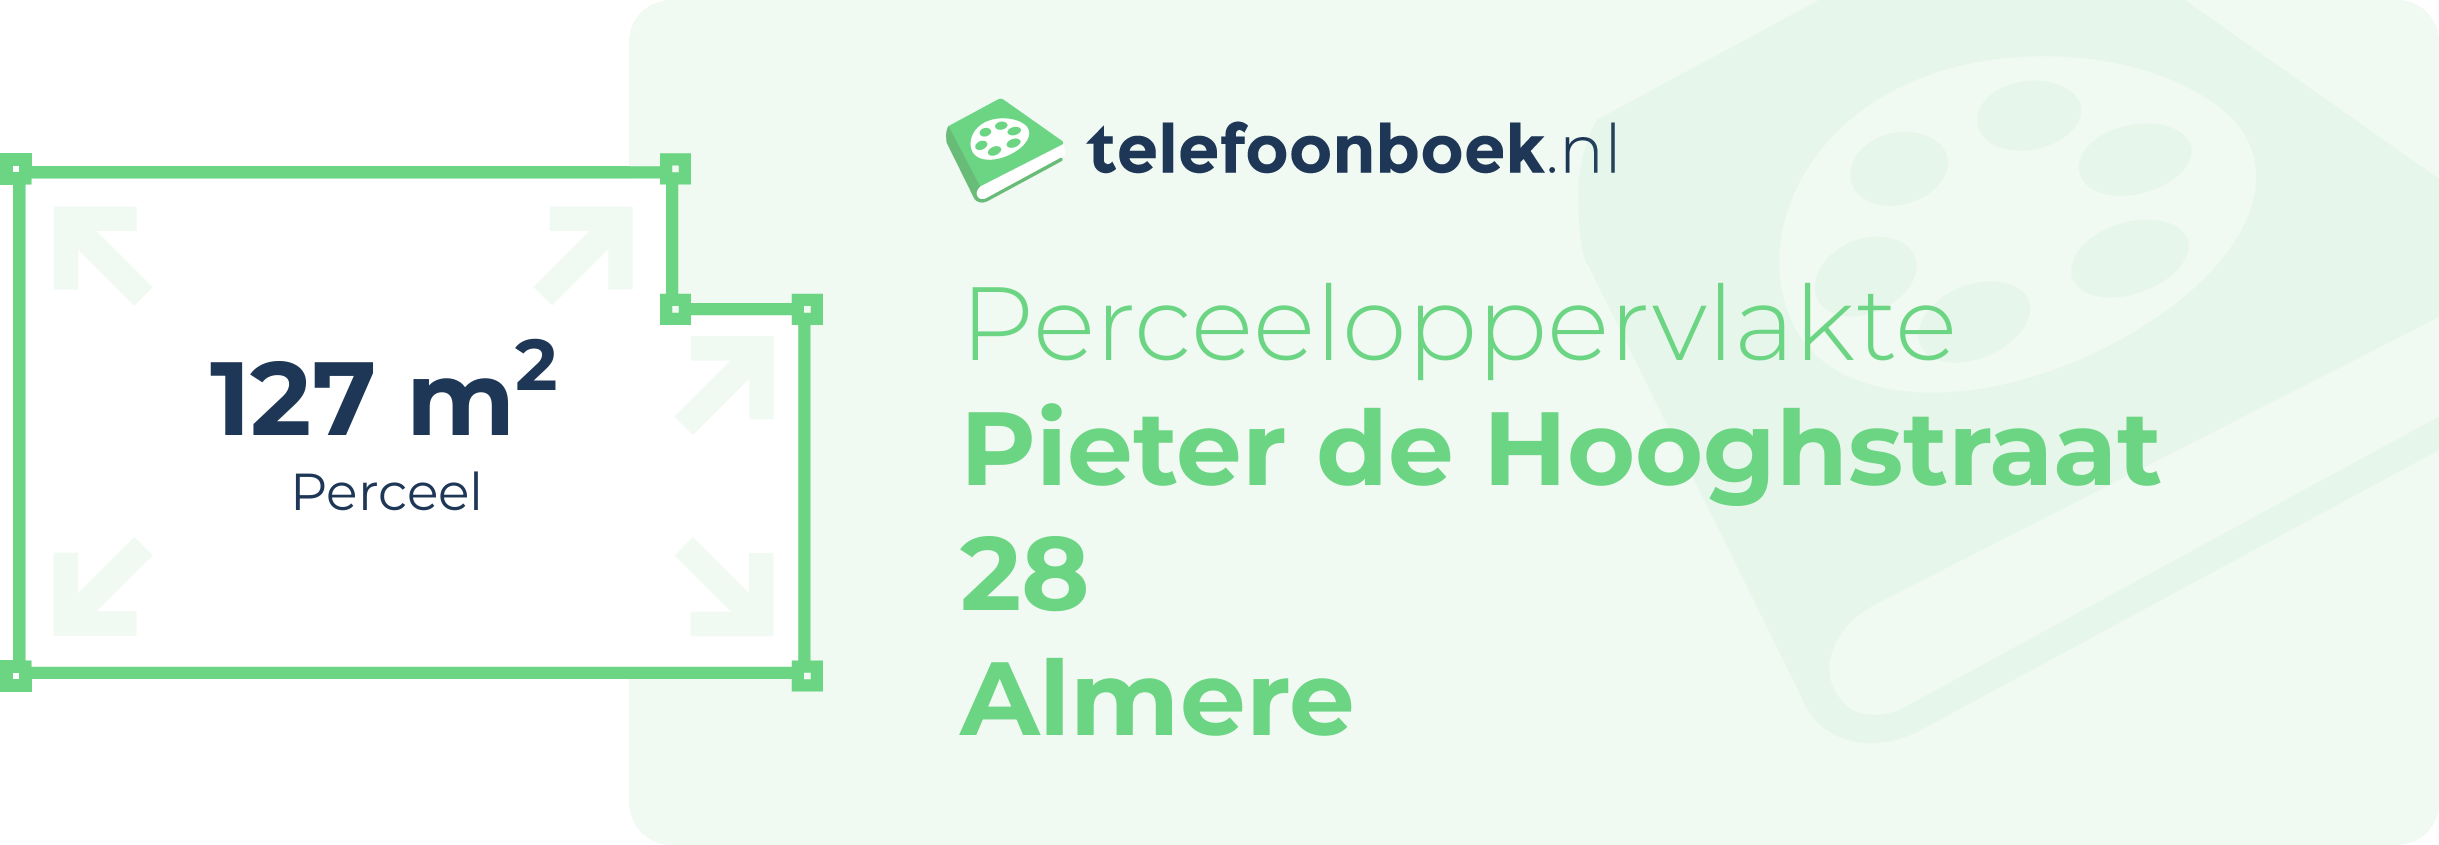 Perceeloppervlakte Pieter De Hooghstraat 28 Almere